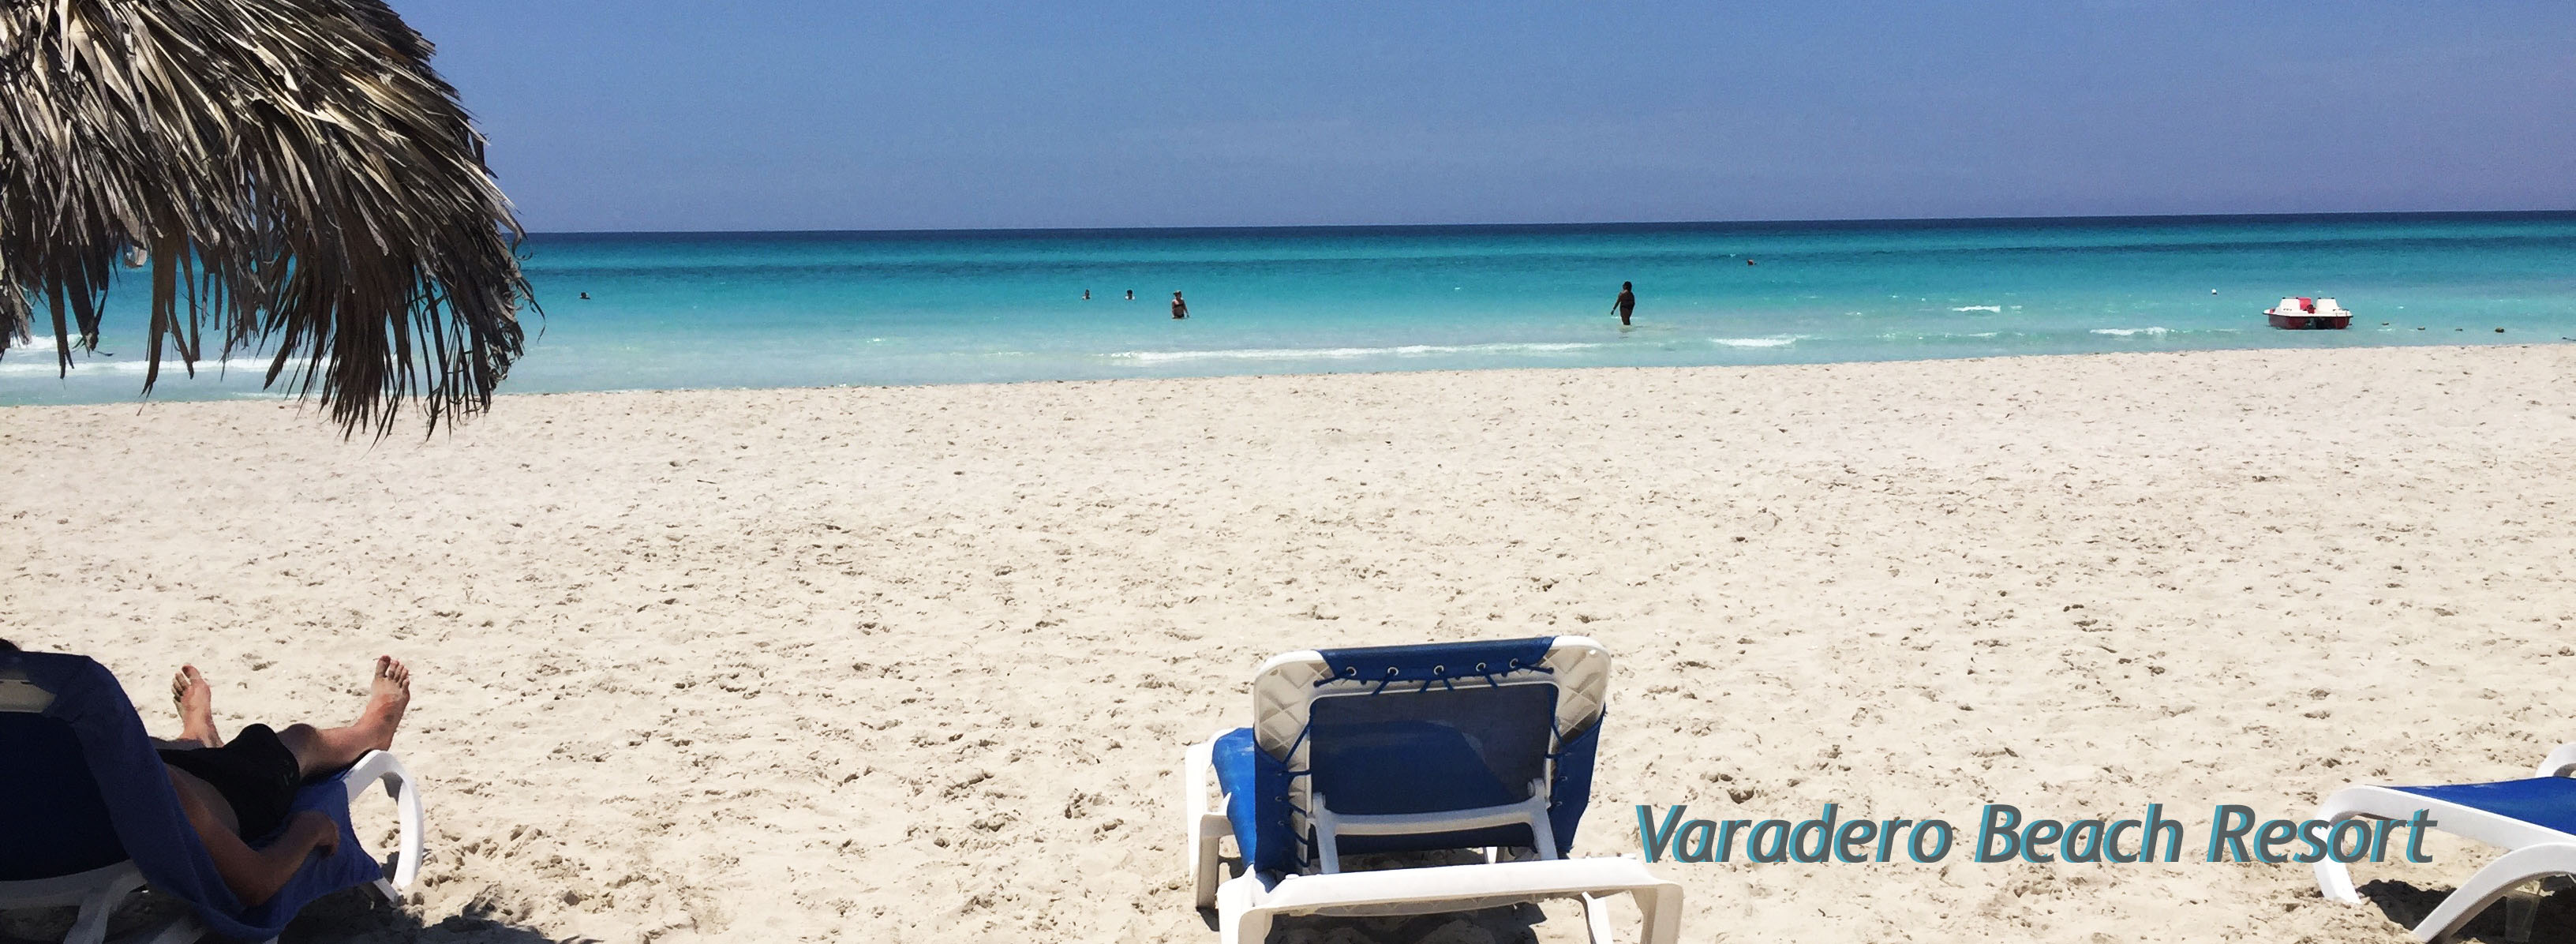 Varadero Beach Resort